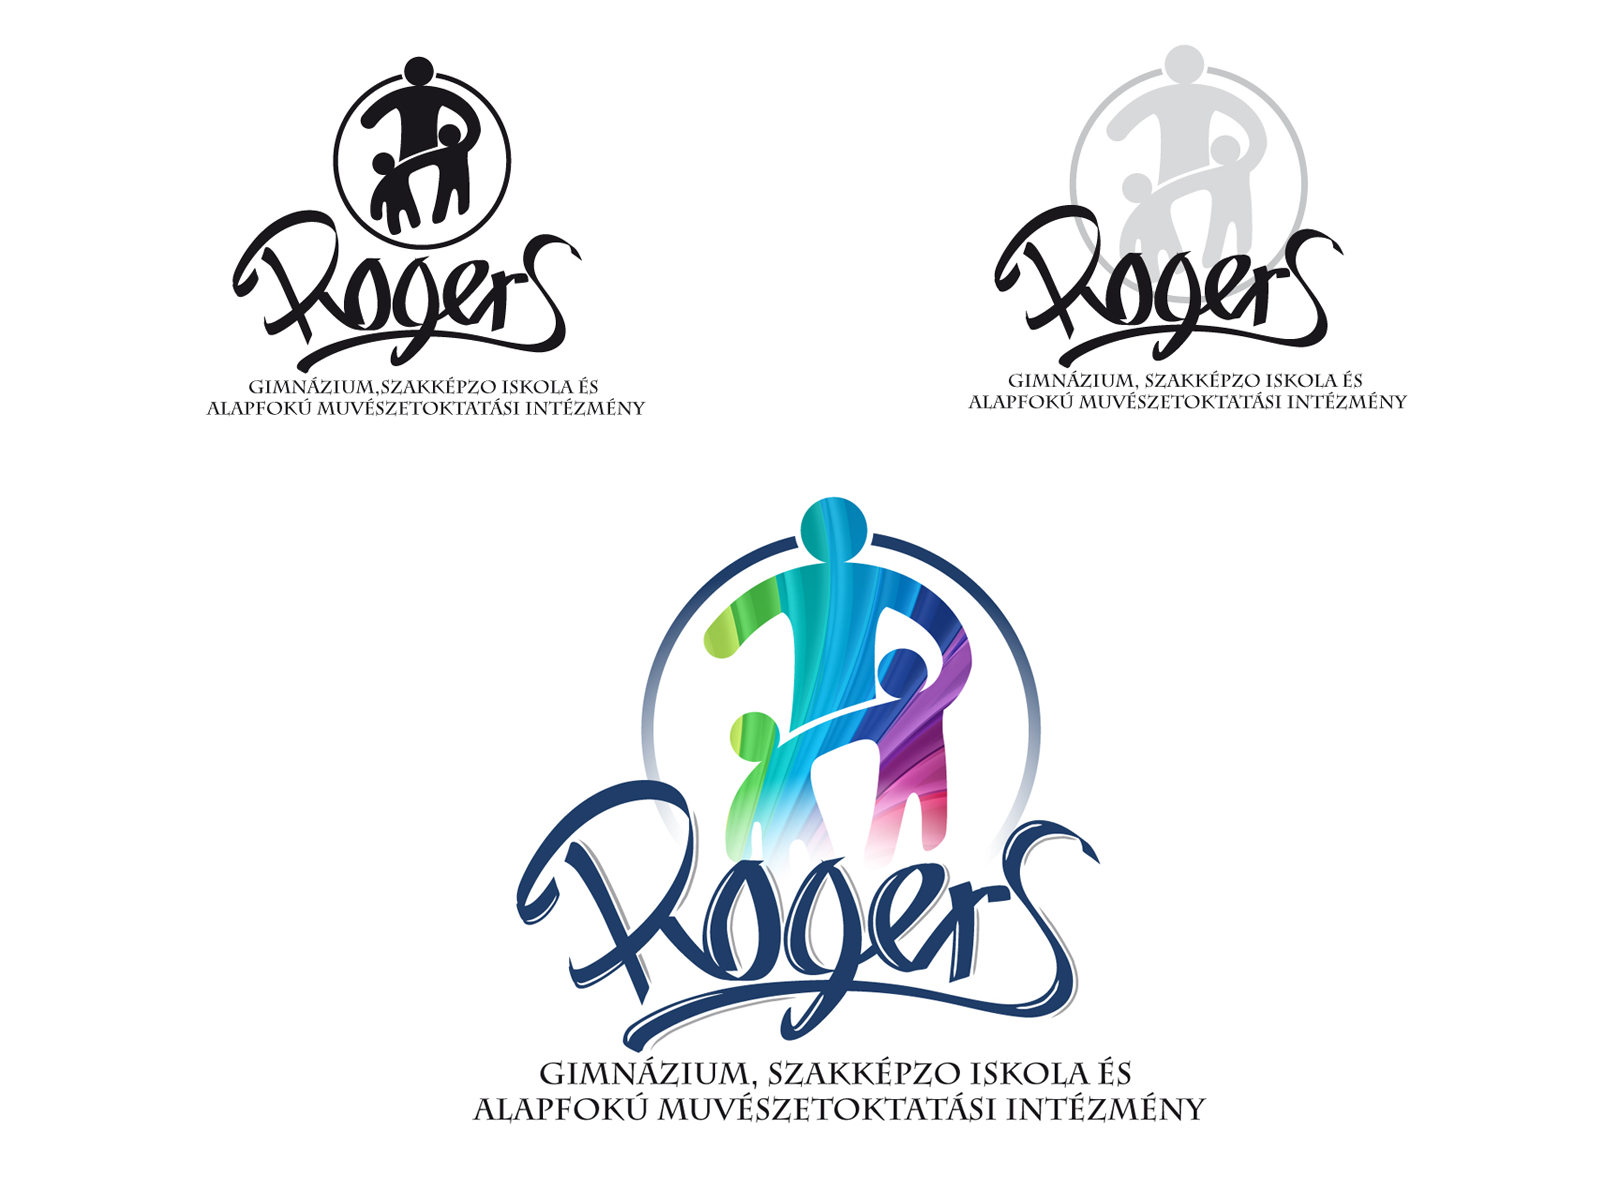 Rogers logo 1 by Krisztián Dáni on Dribbble